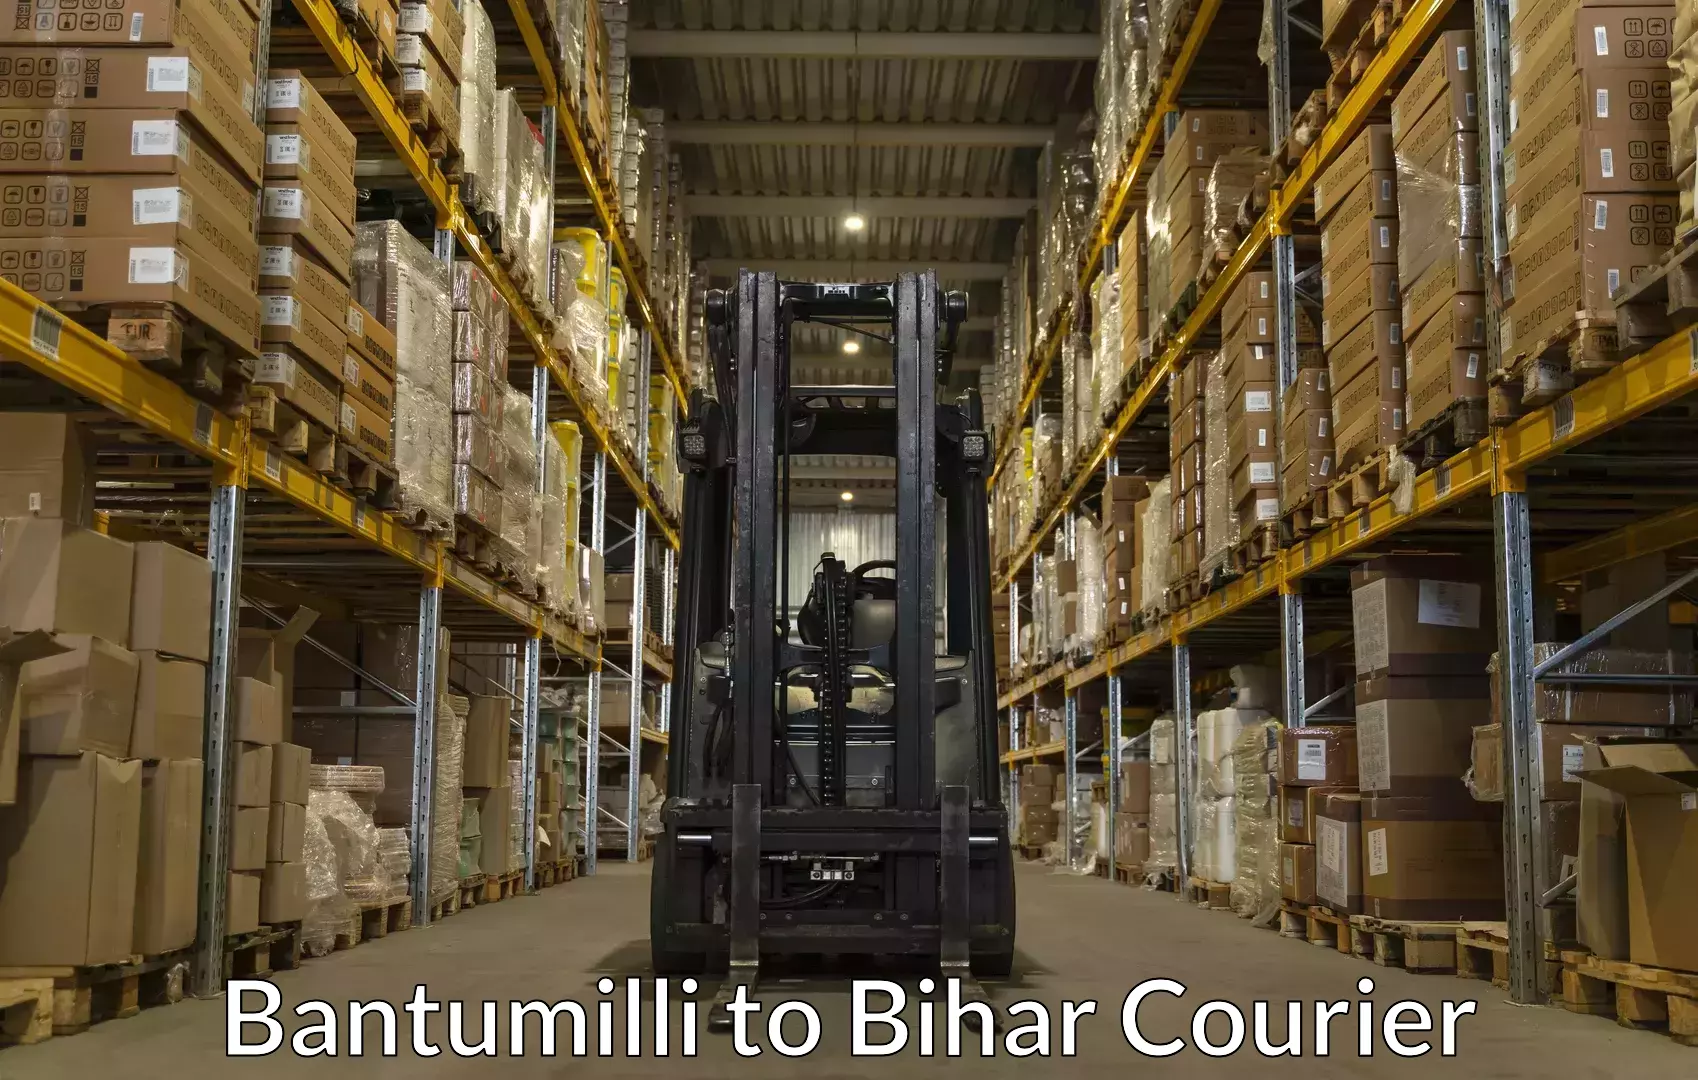 Furniture delivery service Bantumilli to Manjhaul